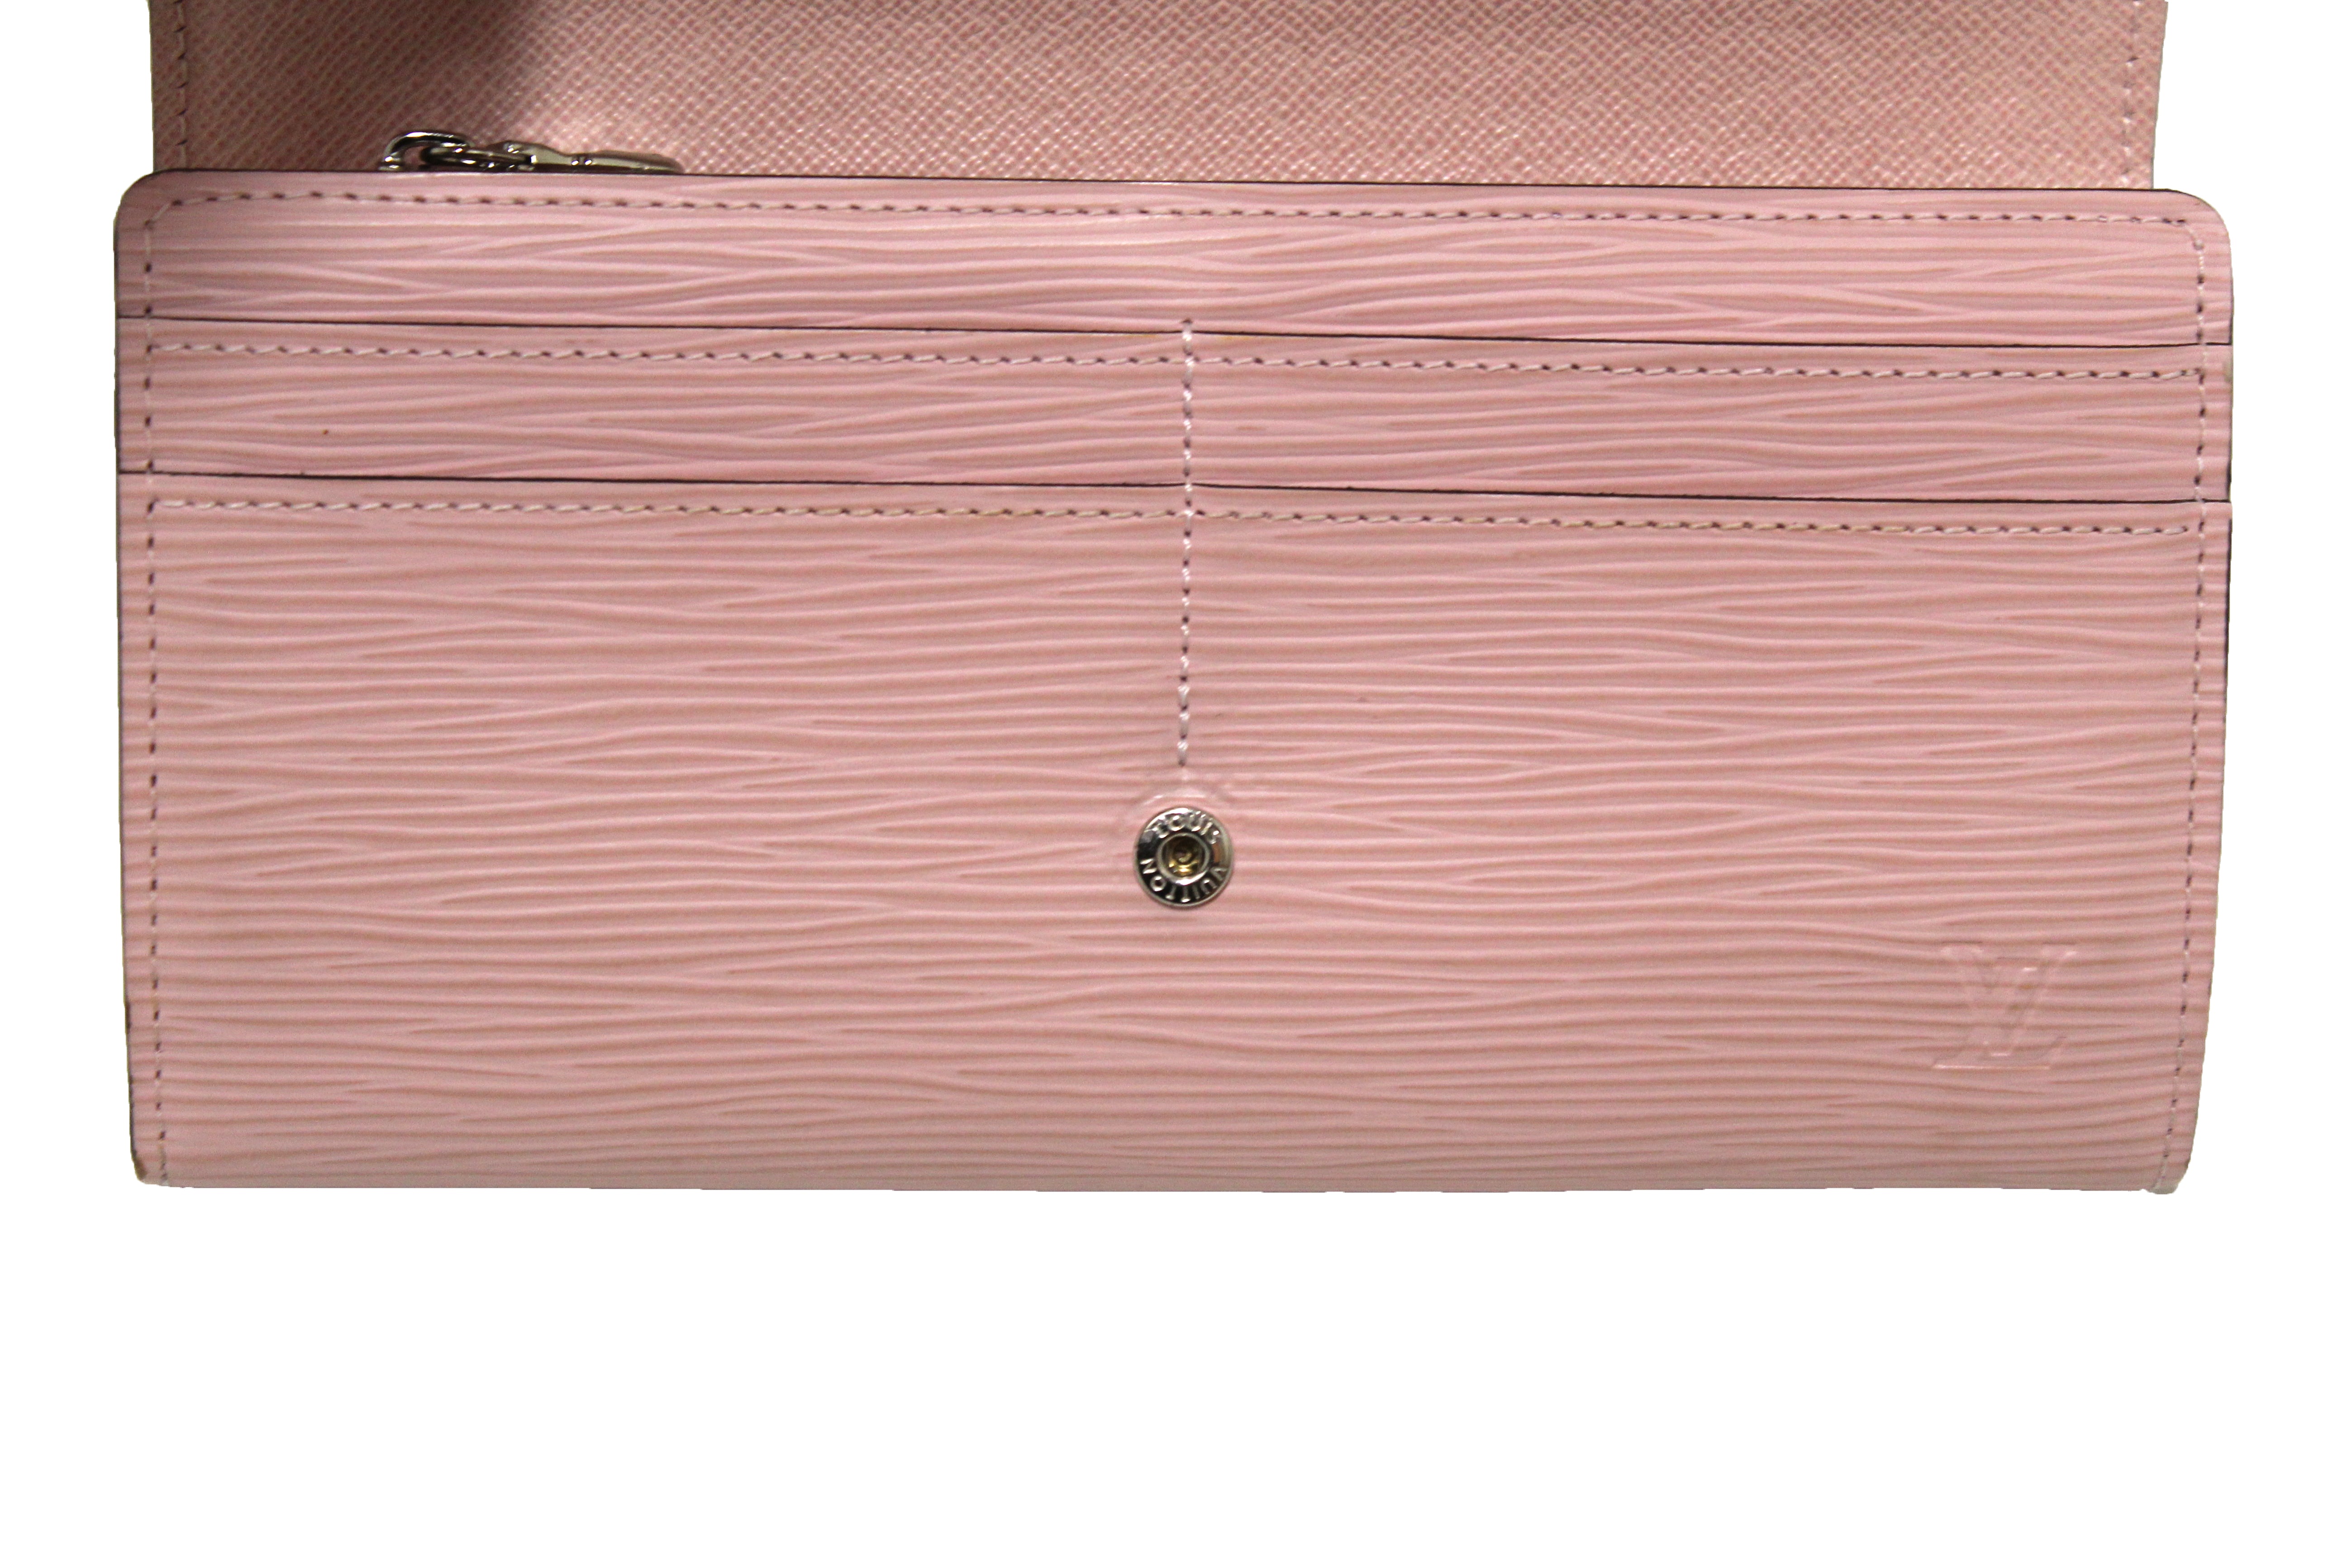 Authentic Louis Vuitton Pink Epi Leather Sarah Wallet